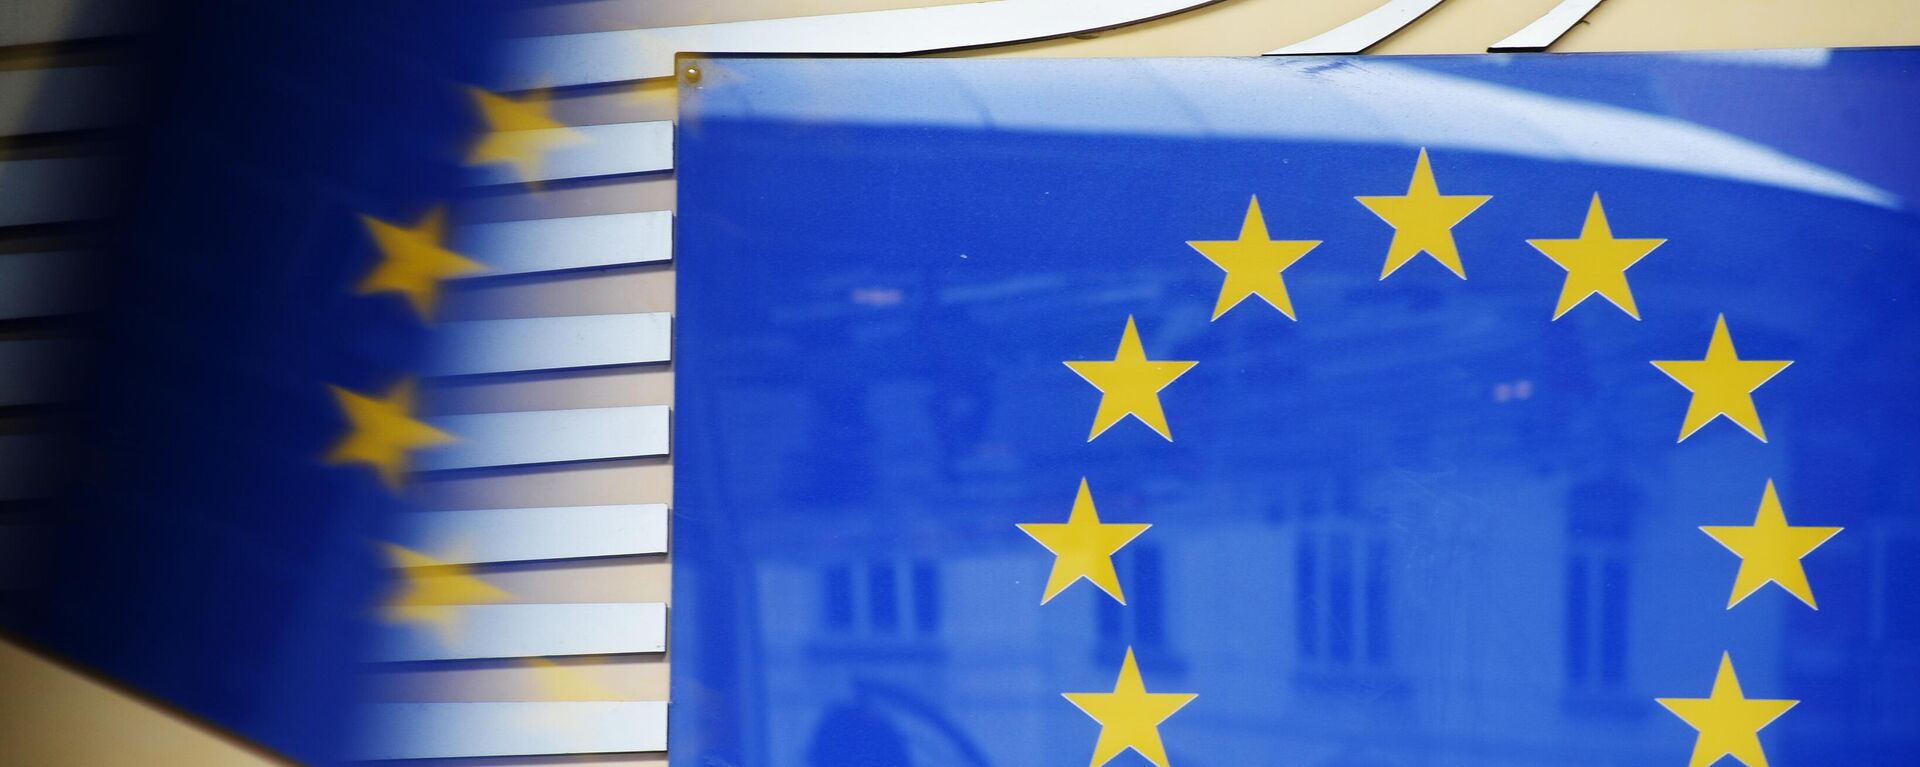 Логотип Евросоюза возле здания штаб-квартиры Европейского парламента в Брюсселе - Sputnik Абхазия, 1920, 27.11.2022